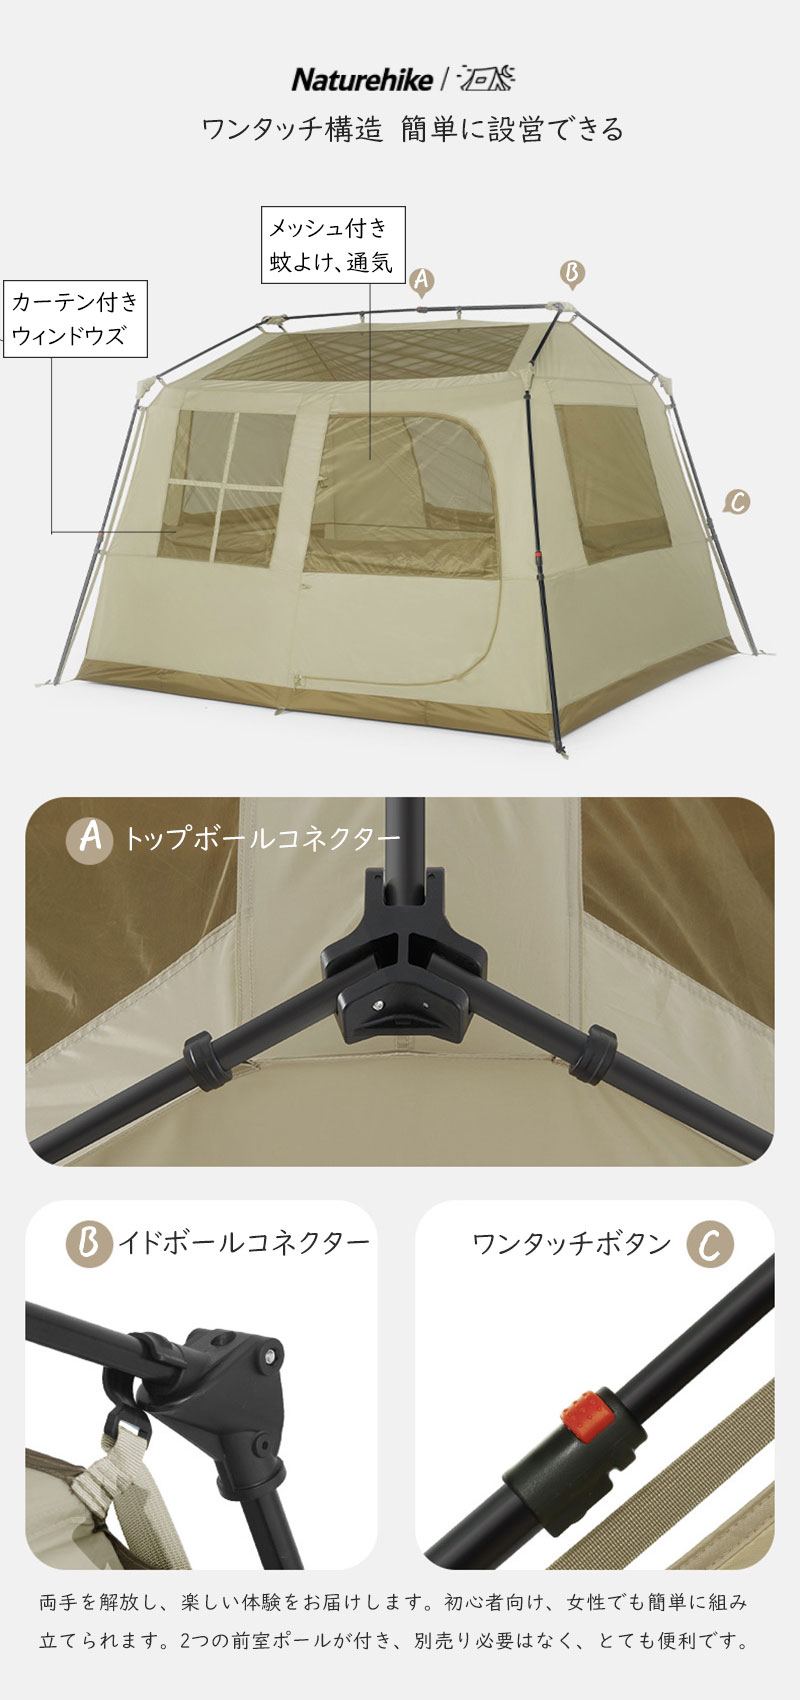 Naturehike Village6.0 ワンタッチ テント 2~6人用 UPF12500+ 第二世代 拡張キャノピー キャンプ uvカット